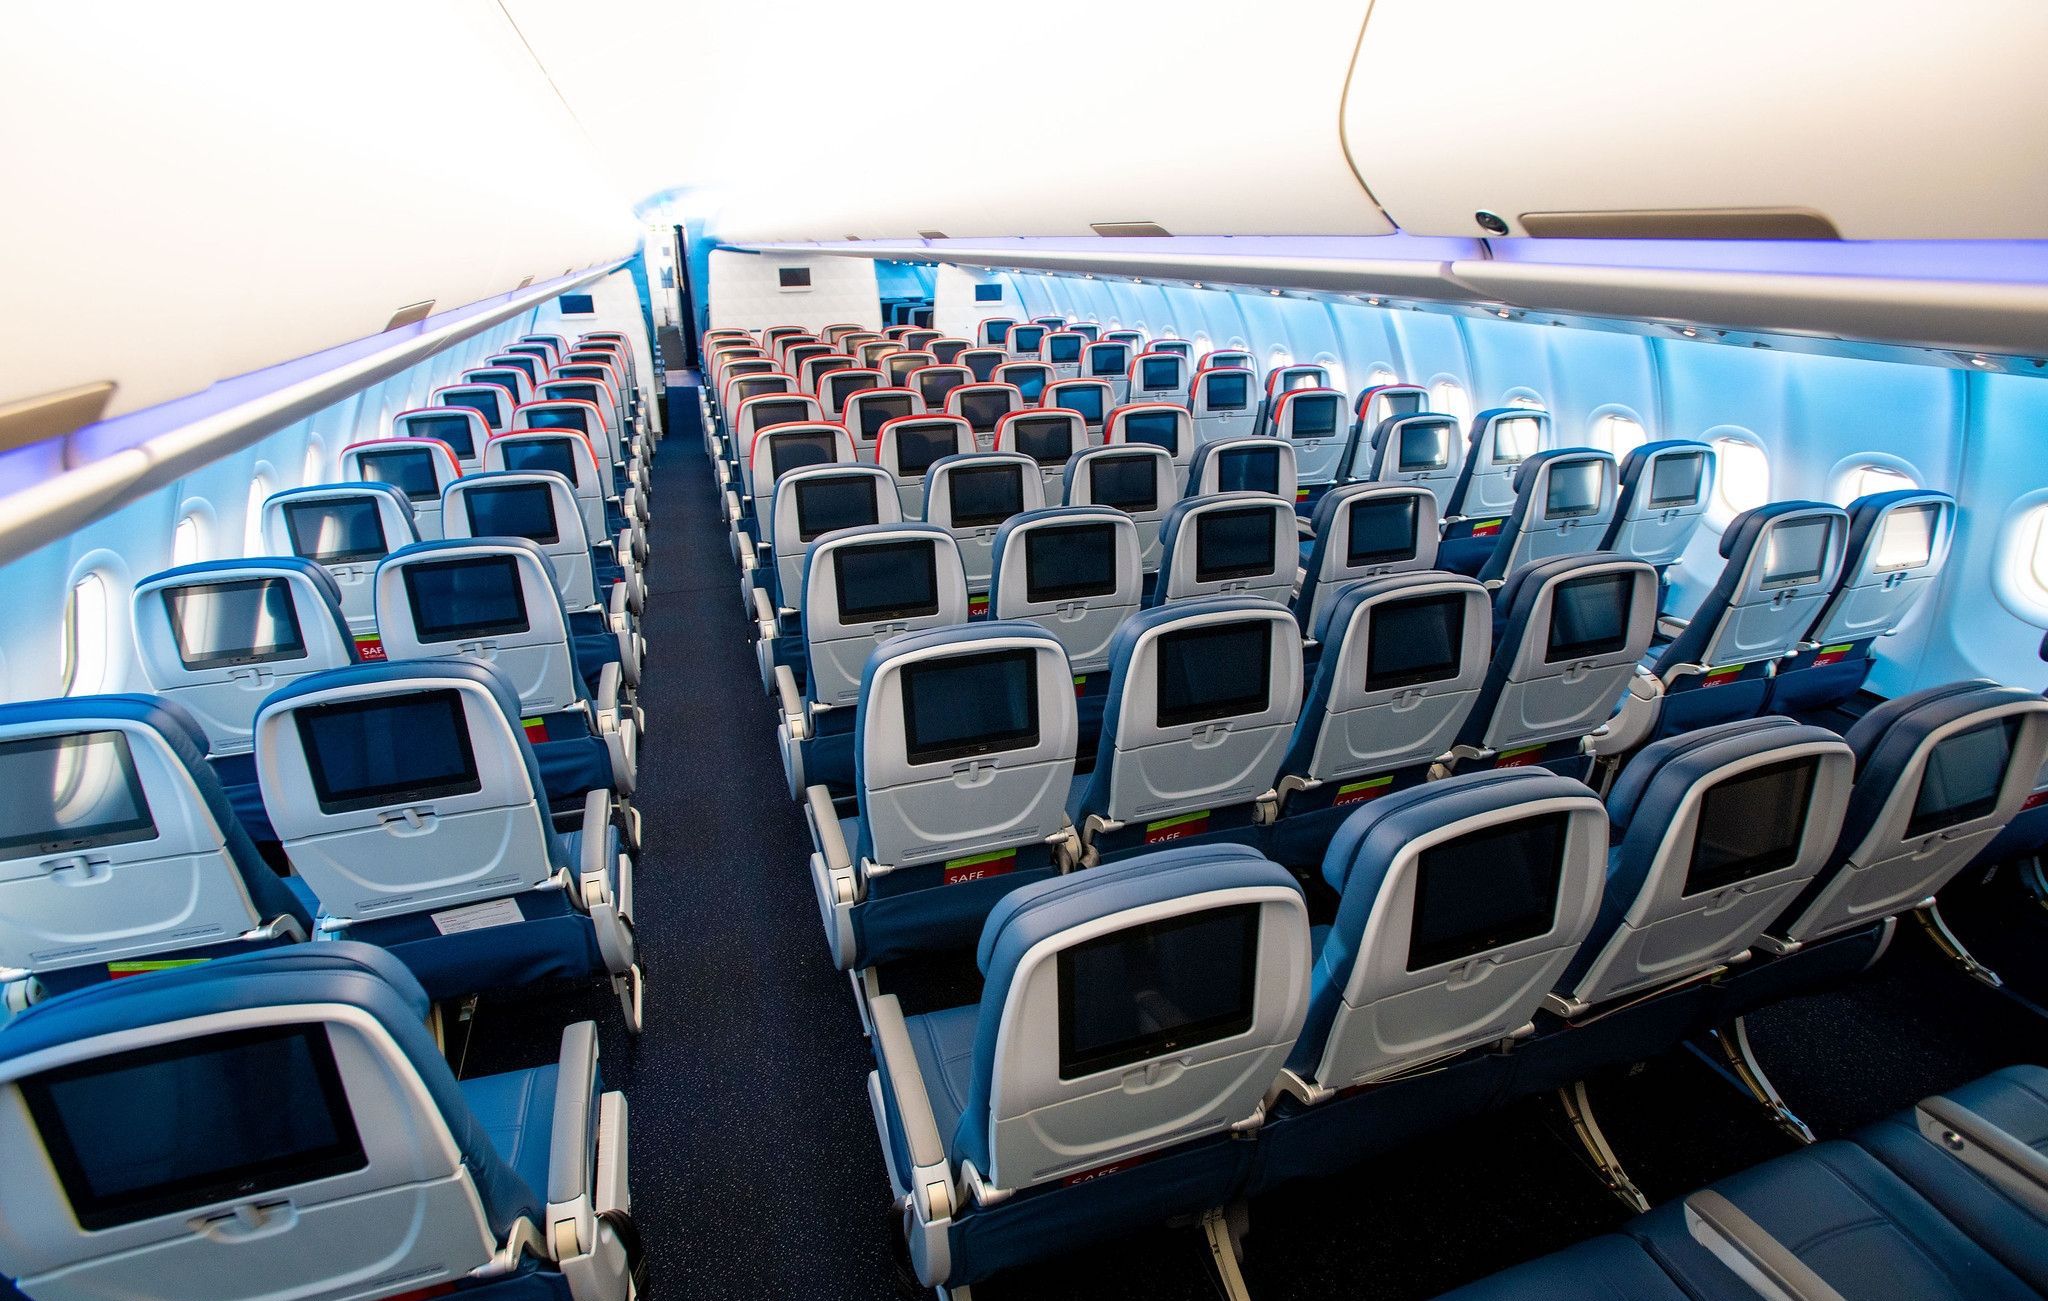 达美航空a330neo正式执飞上海至西雅图航线,至臻商务舱亮相